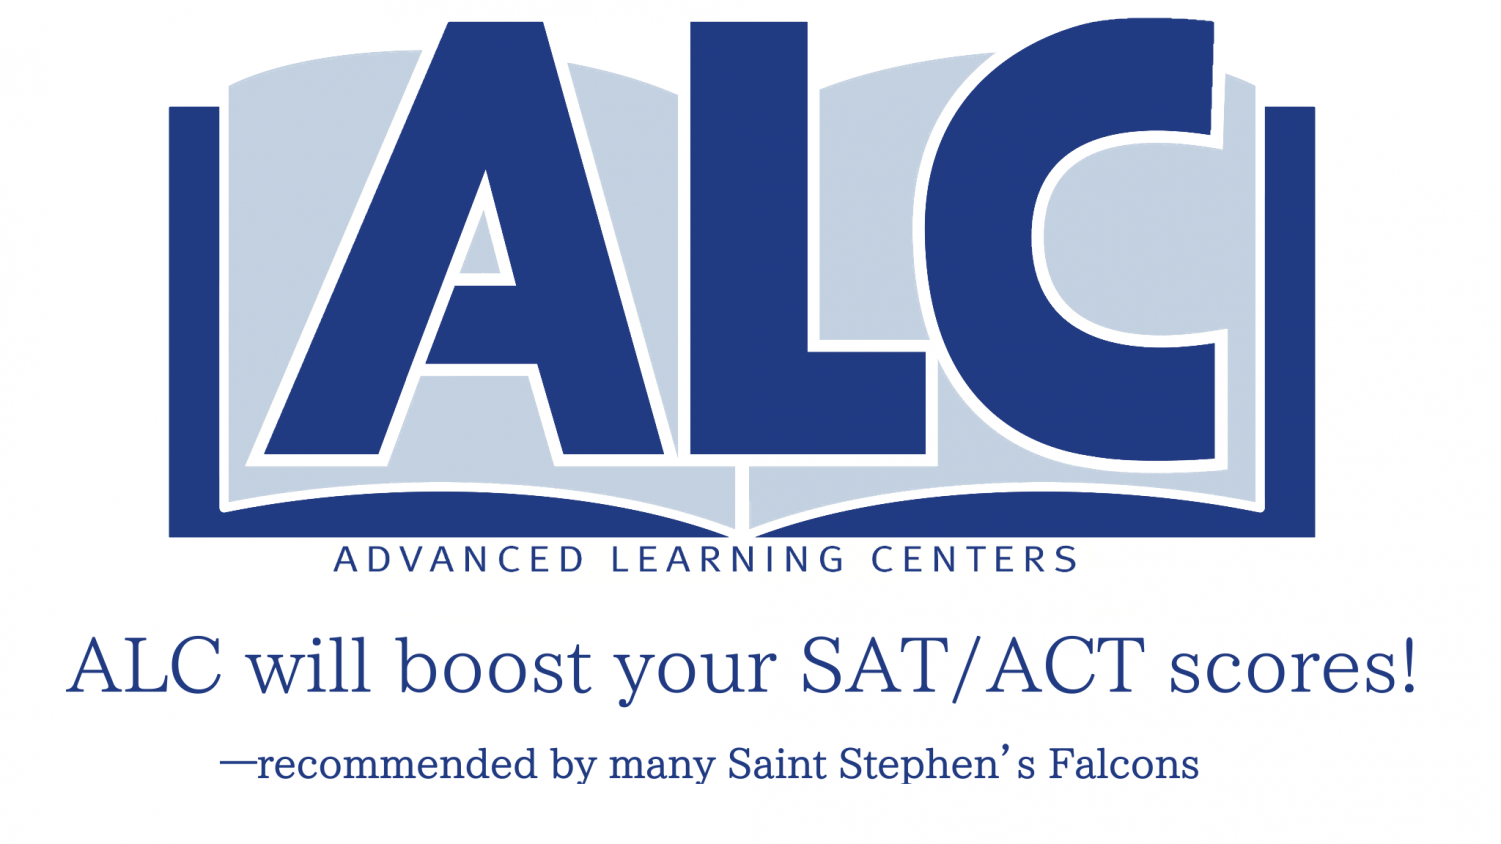 АЛКЗ logo. ALC. HKA_ALC. Advanced Learning. Алкз